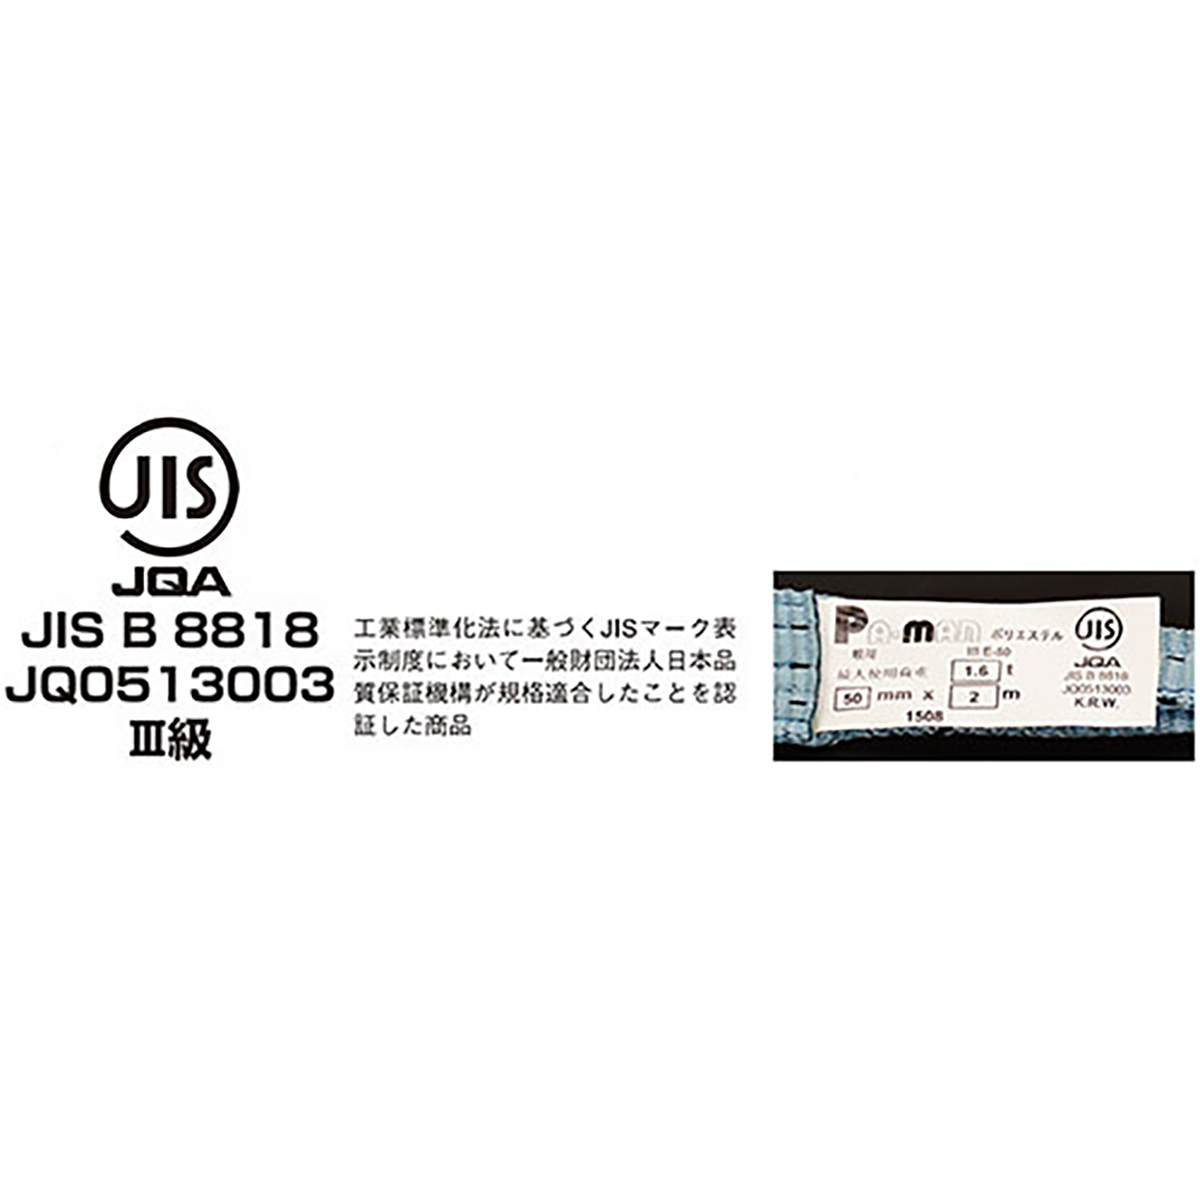 ポリベルトスリング JIS III級 ソフト面付 巾35mm 2m 1本